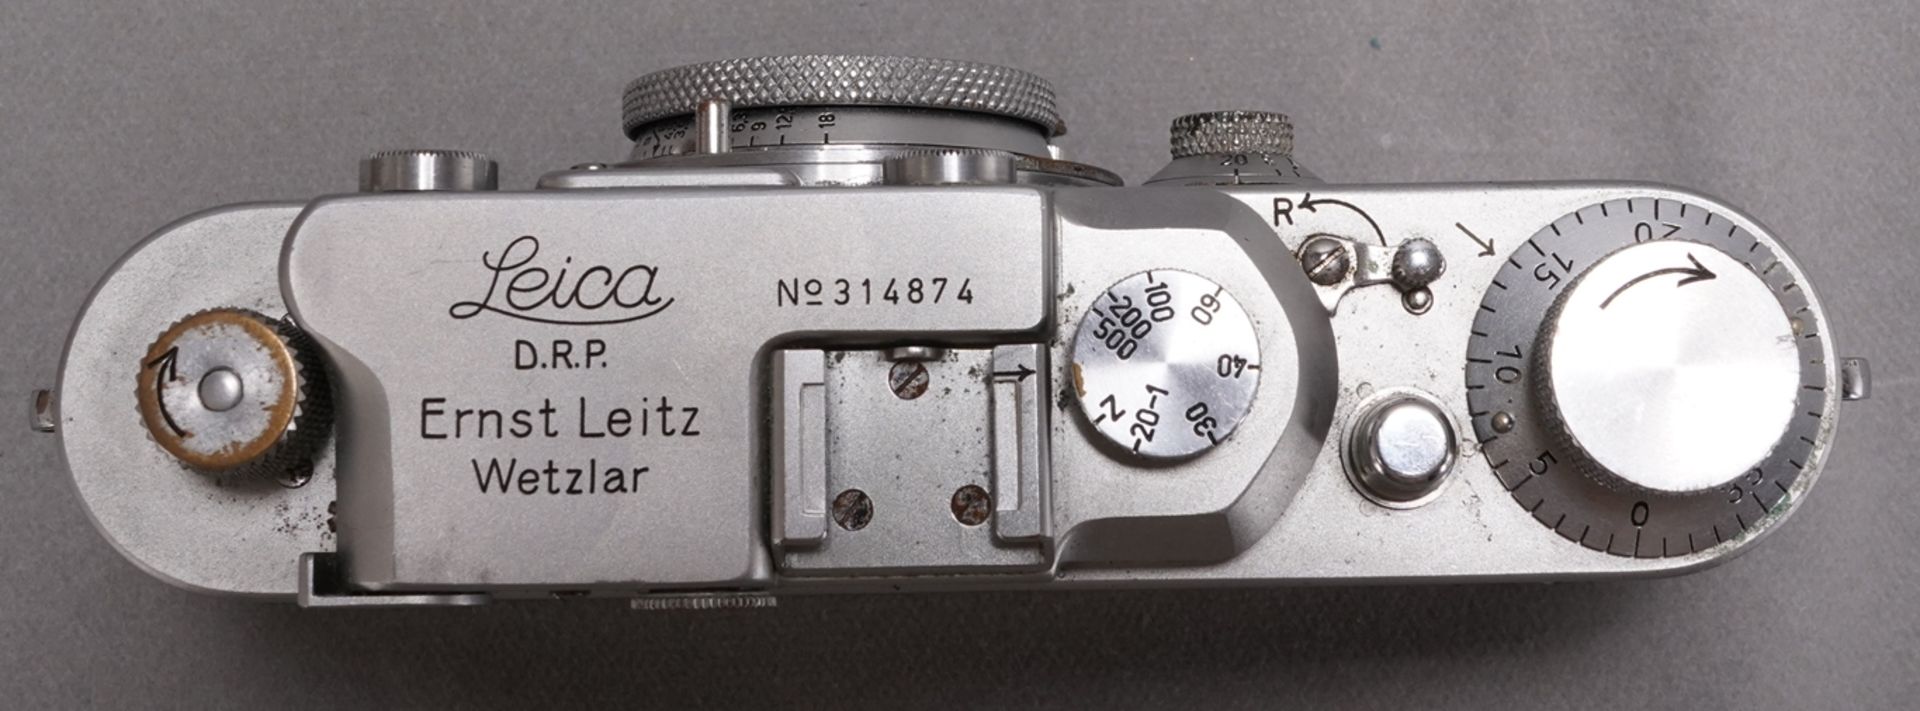 Leica III - Image 4 of 5